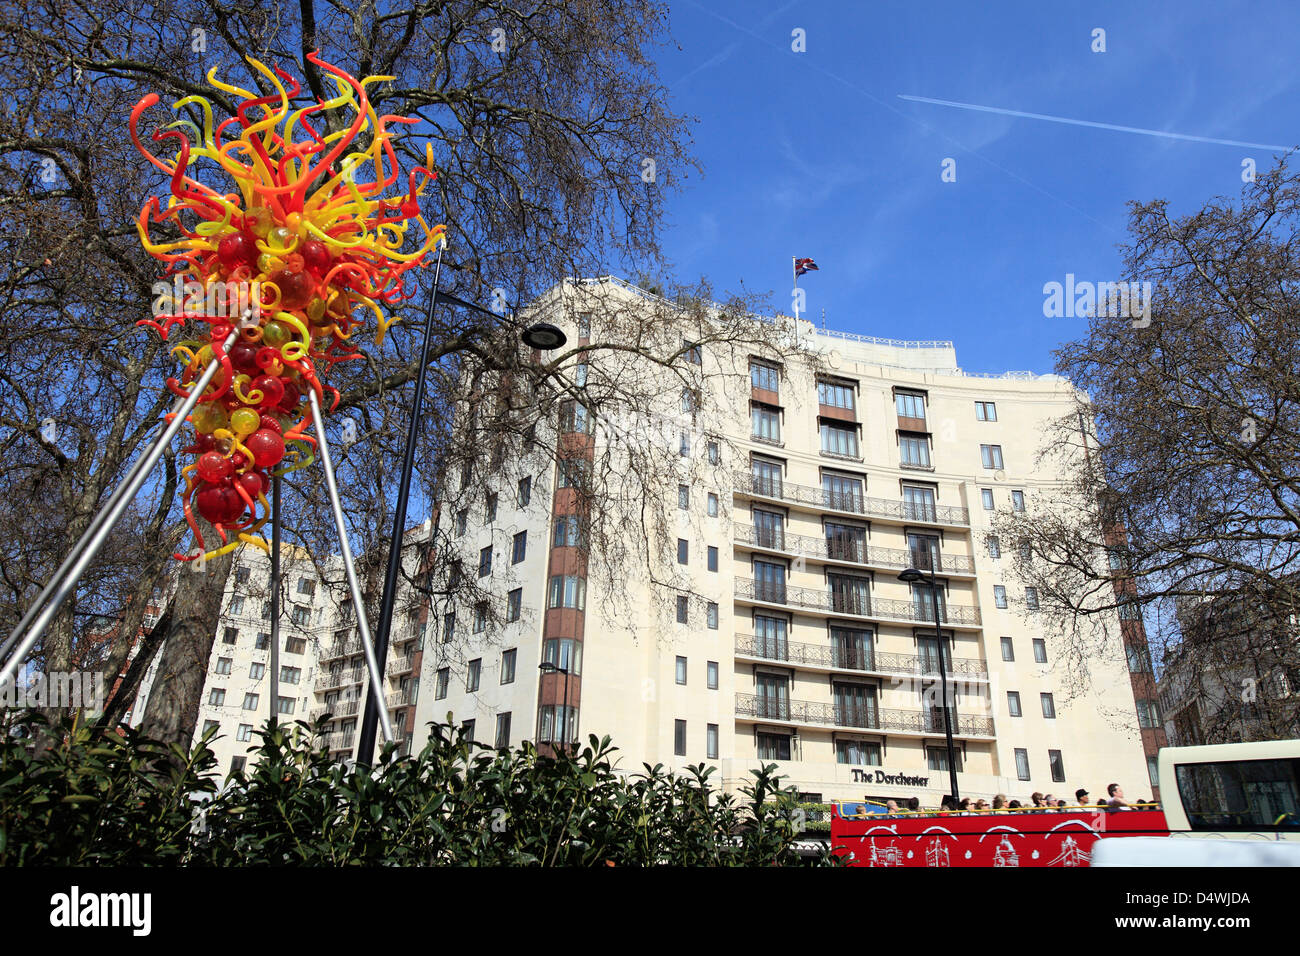 United Kingdom West London Park Lane lustre aux flambeaux l'art public sur l'écran en face de l'hôtel dorchester Banque D'Images